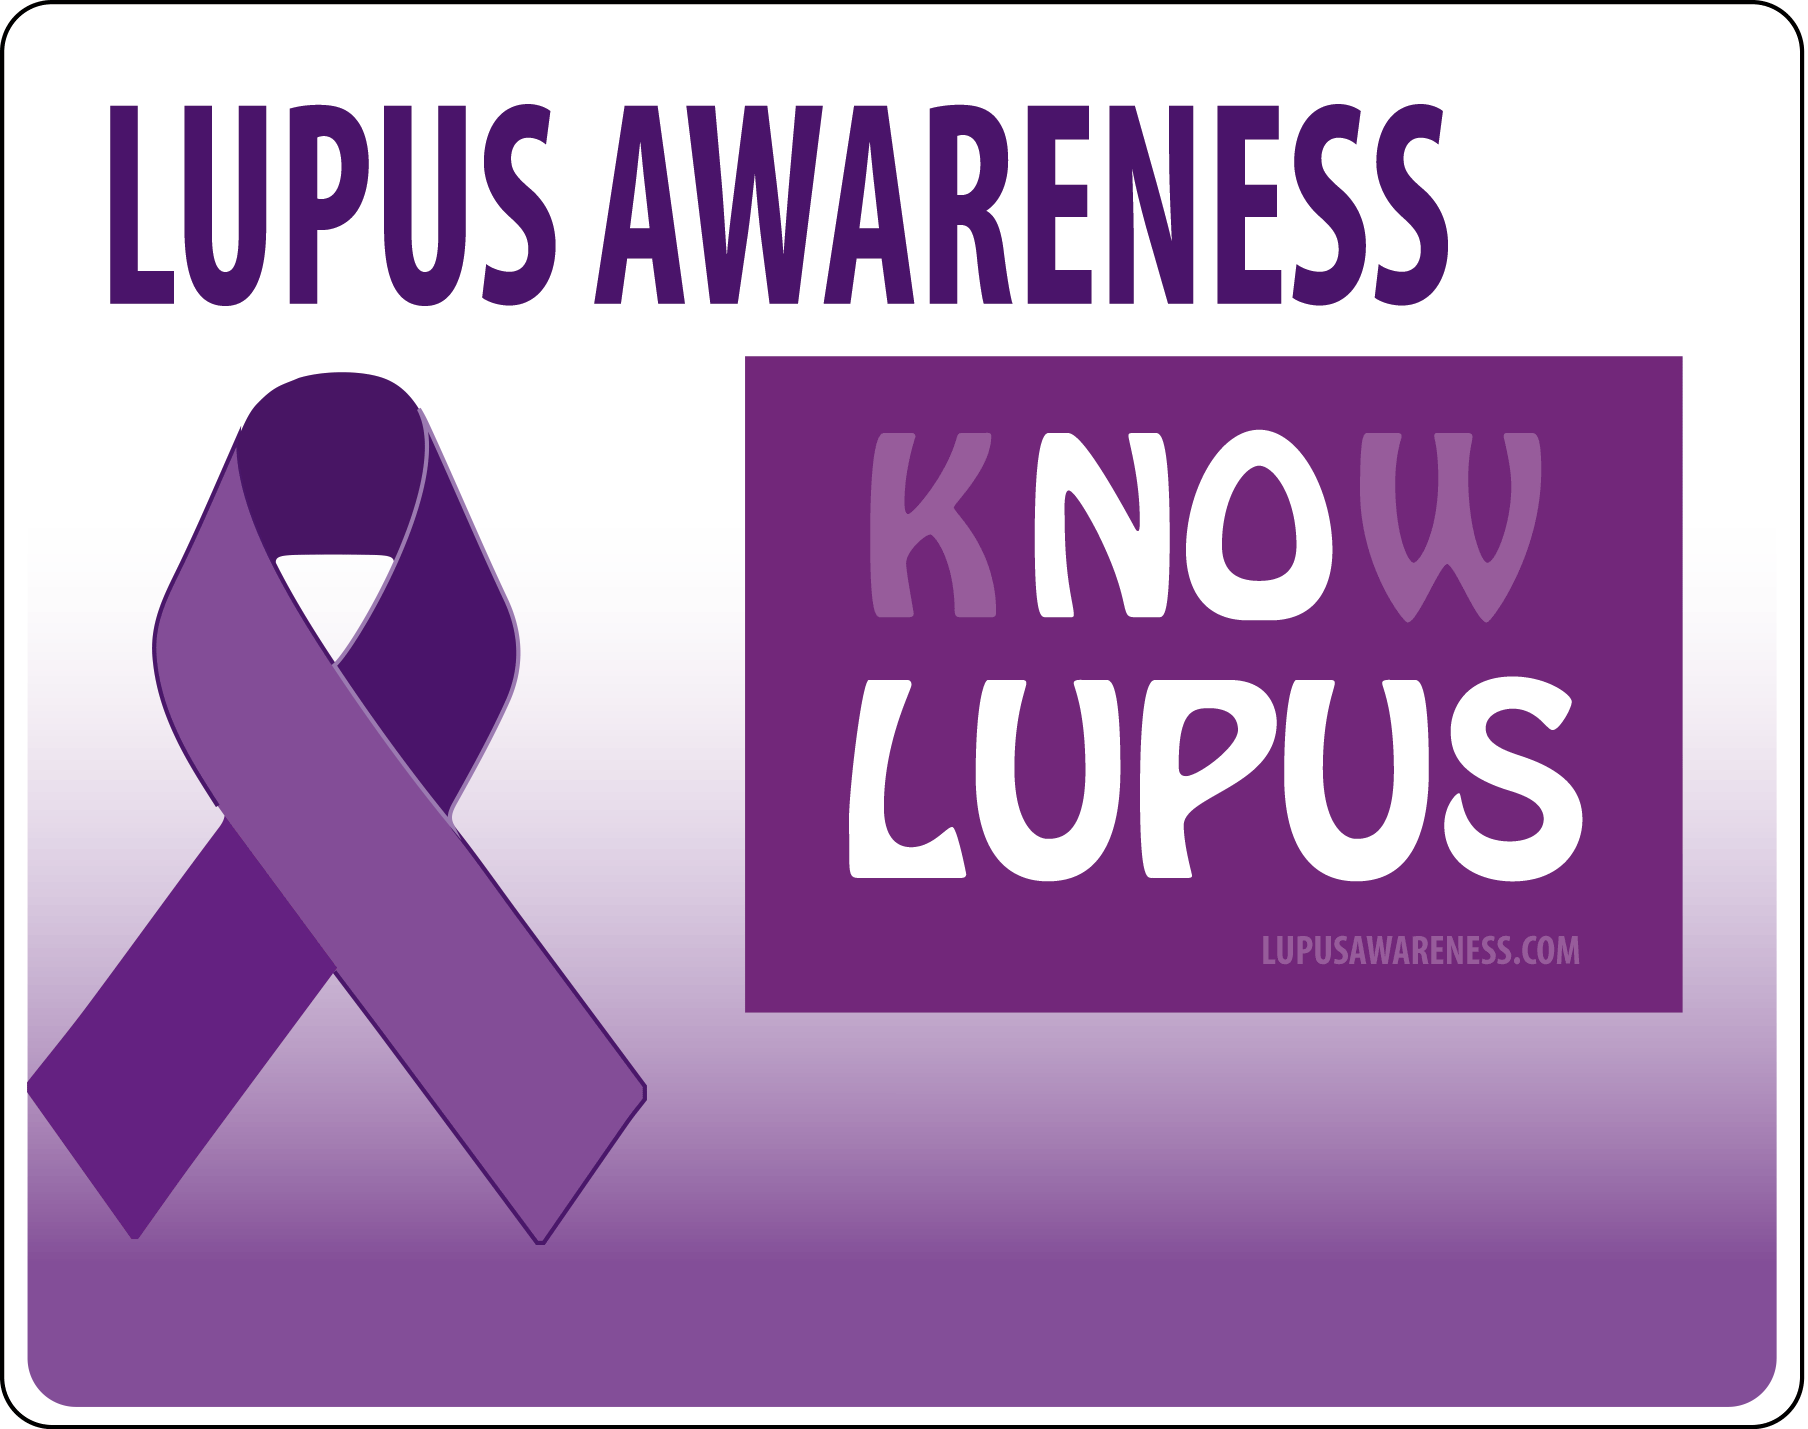 Image - Lupus Awareness